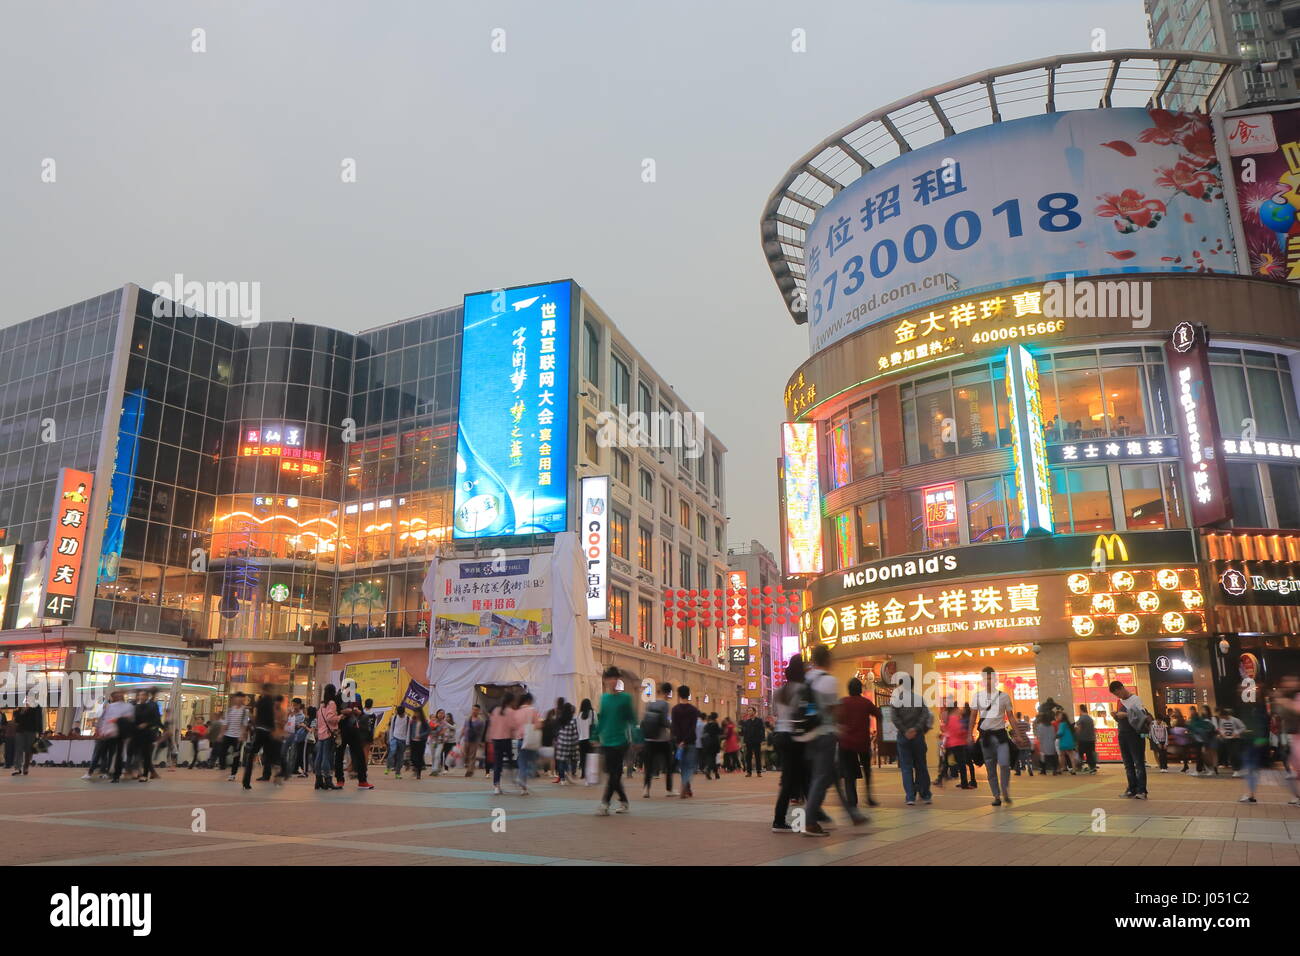 Personnes visitent la rue piétonne Shangxiajiu Guangzhou en Chine. Le premier est de Shangxiajiu street à Guangzhou a ouvert en 1998 Banque D'Images